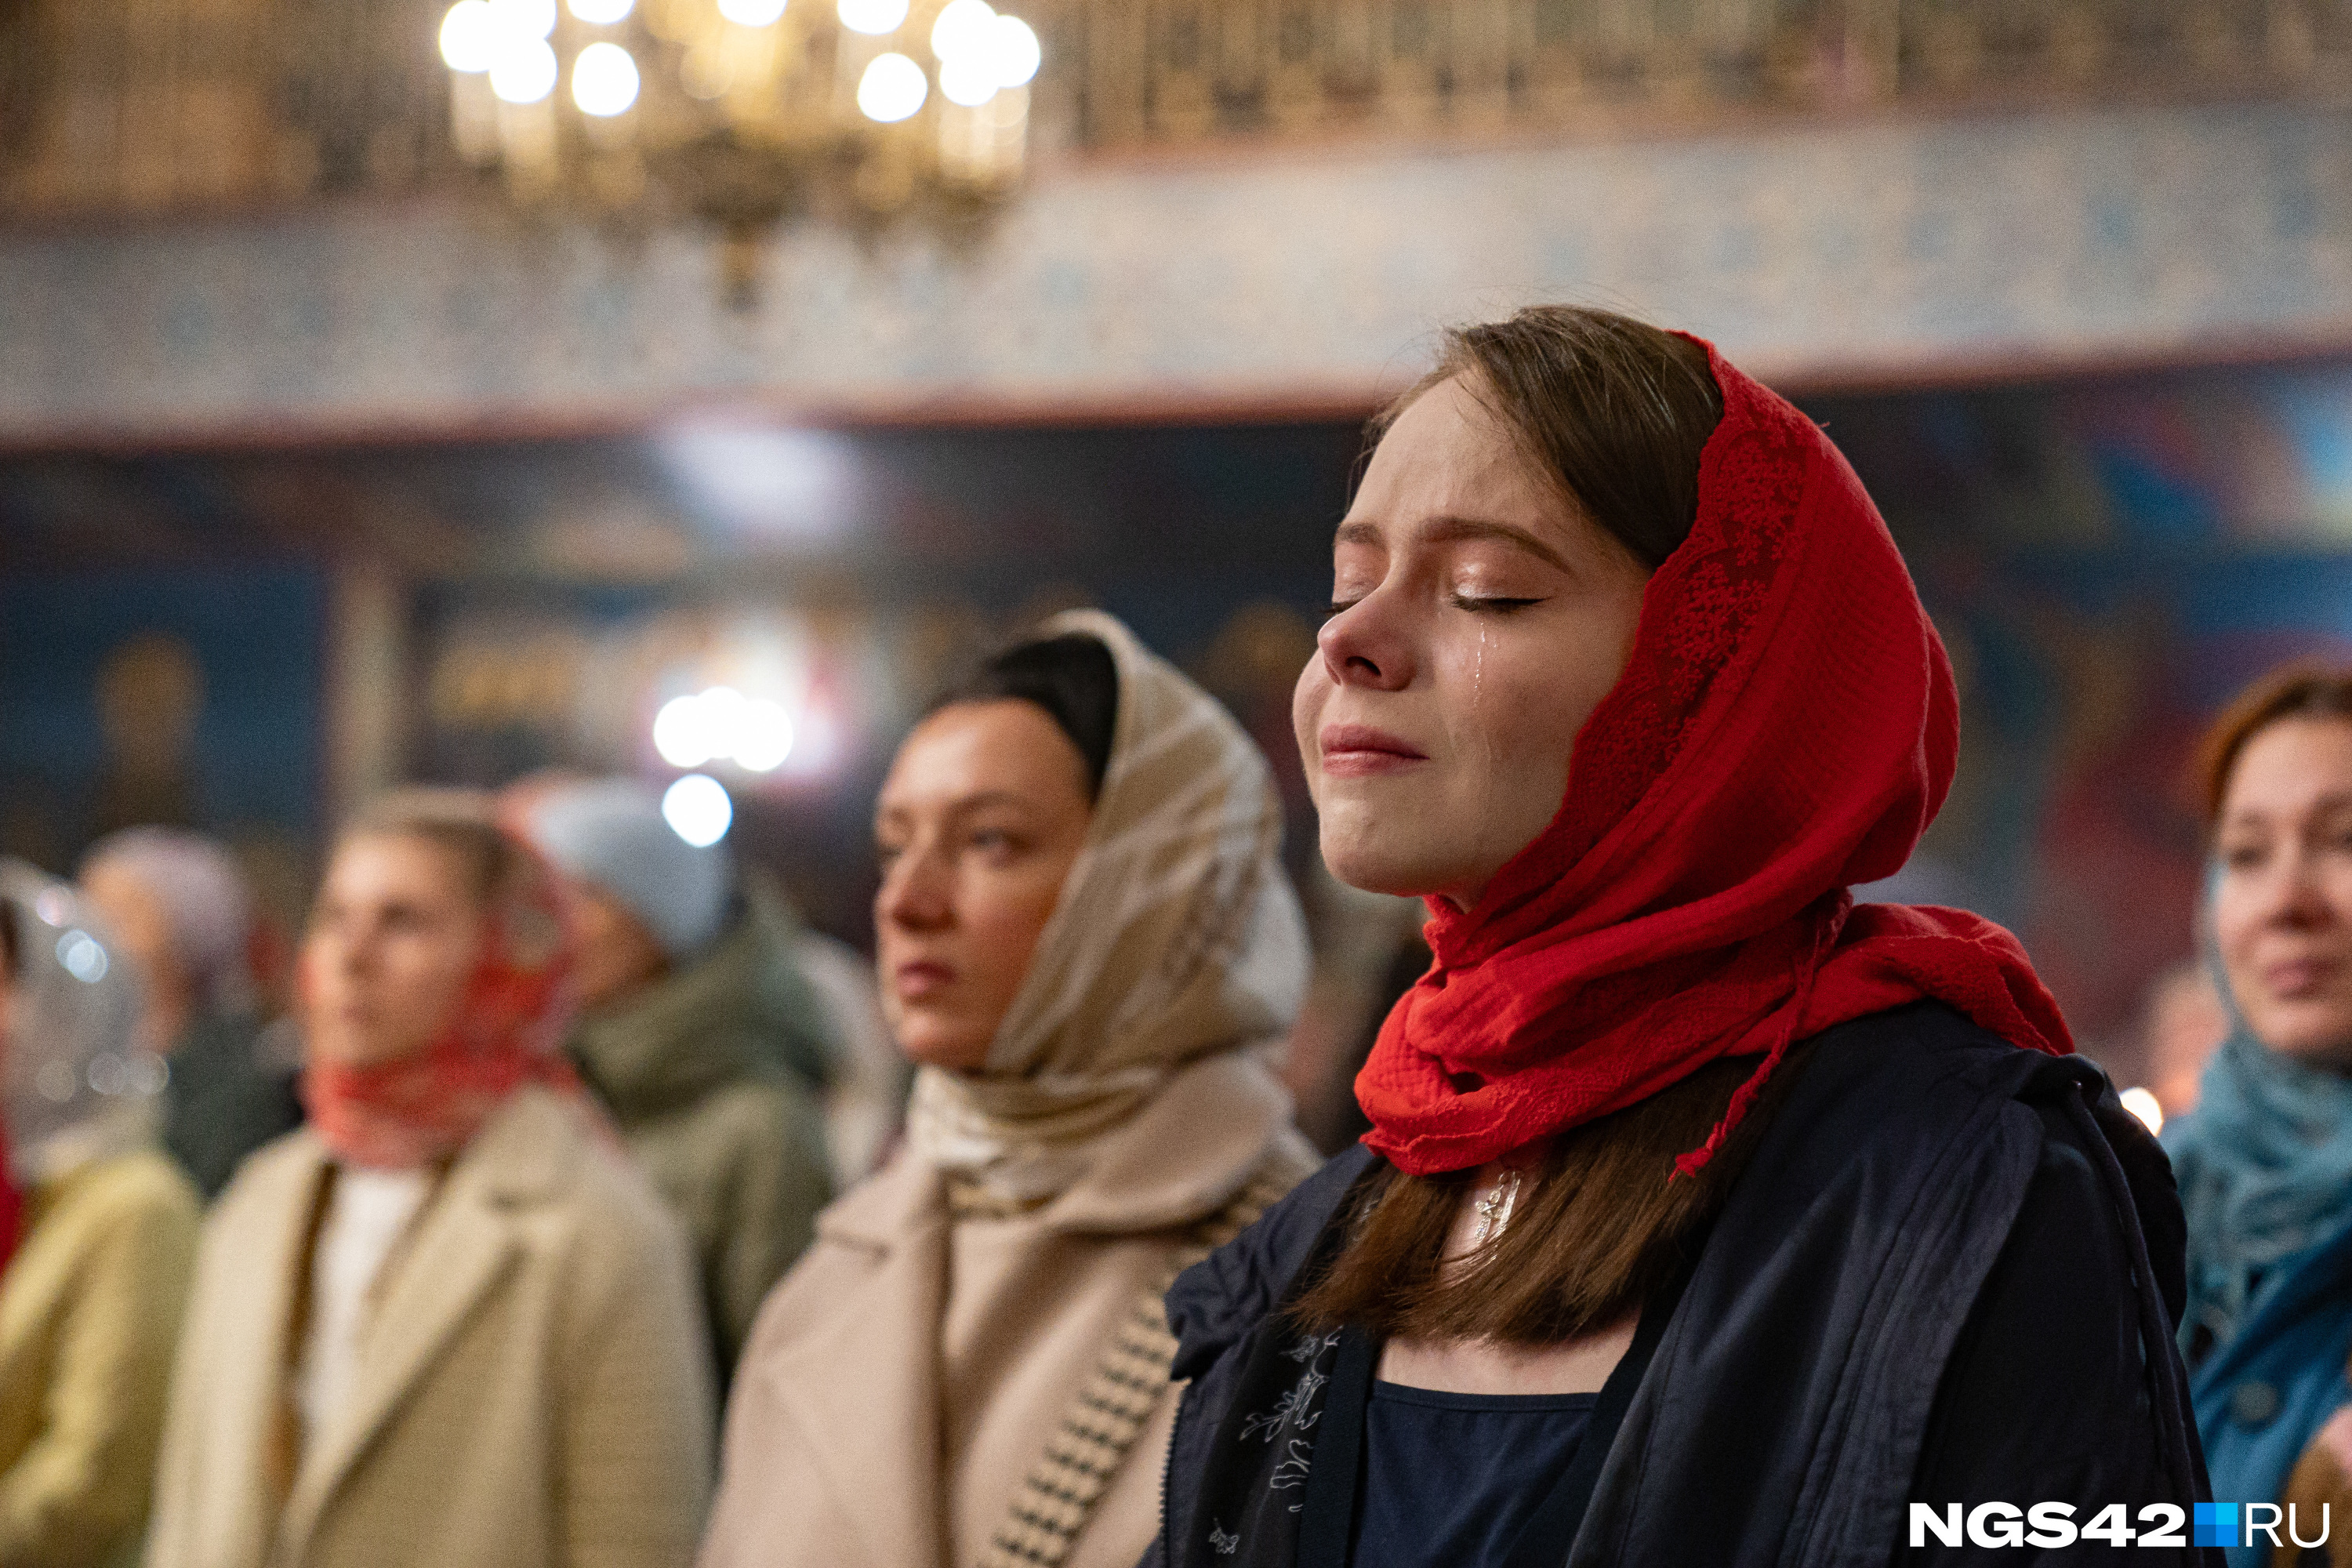 “Слезы и свечи”: как православные кемеровчане отметили пасхальную ночь - светлый фоторепортаж со службы